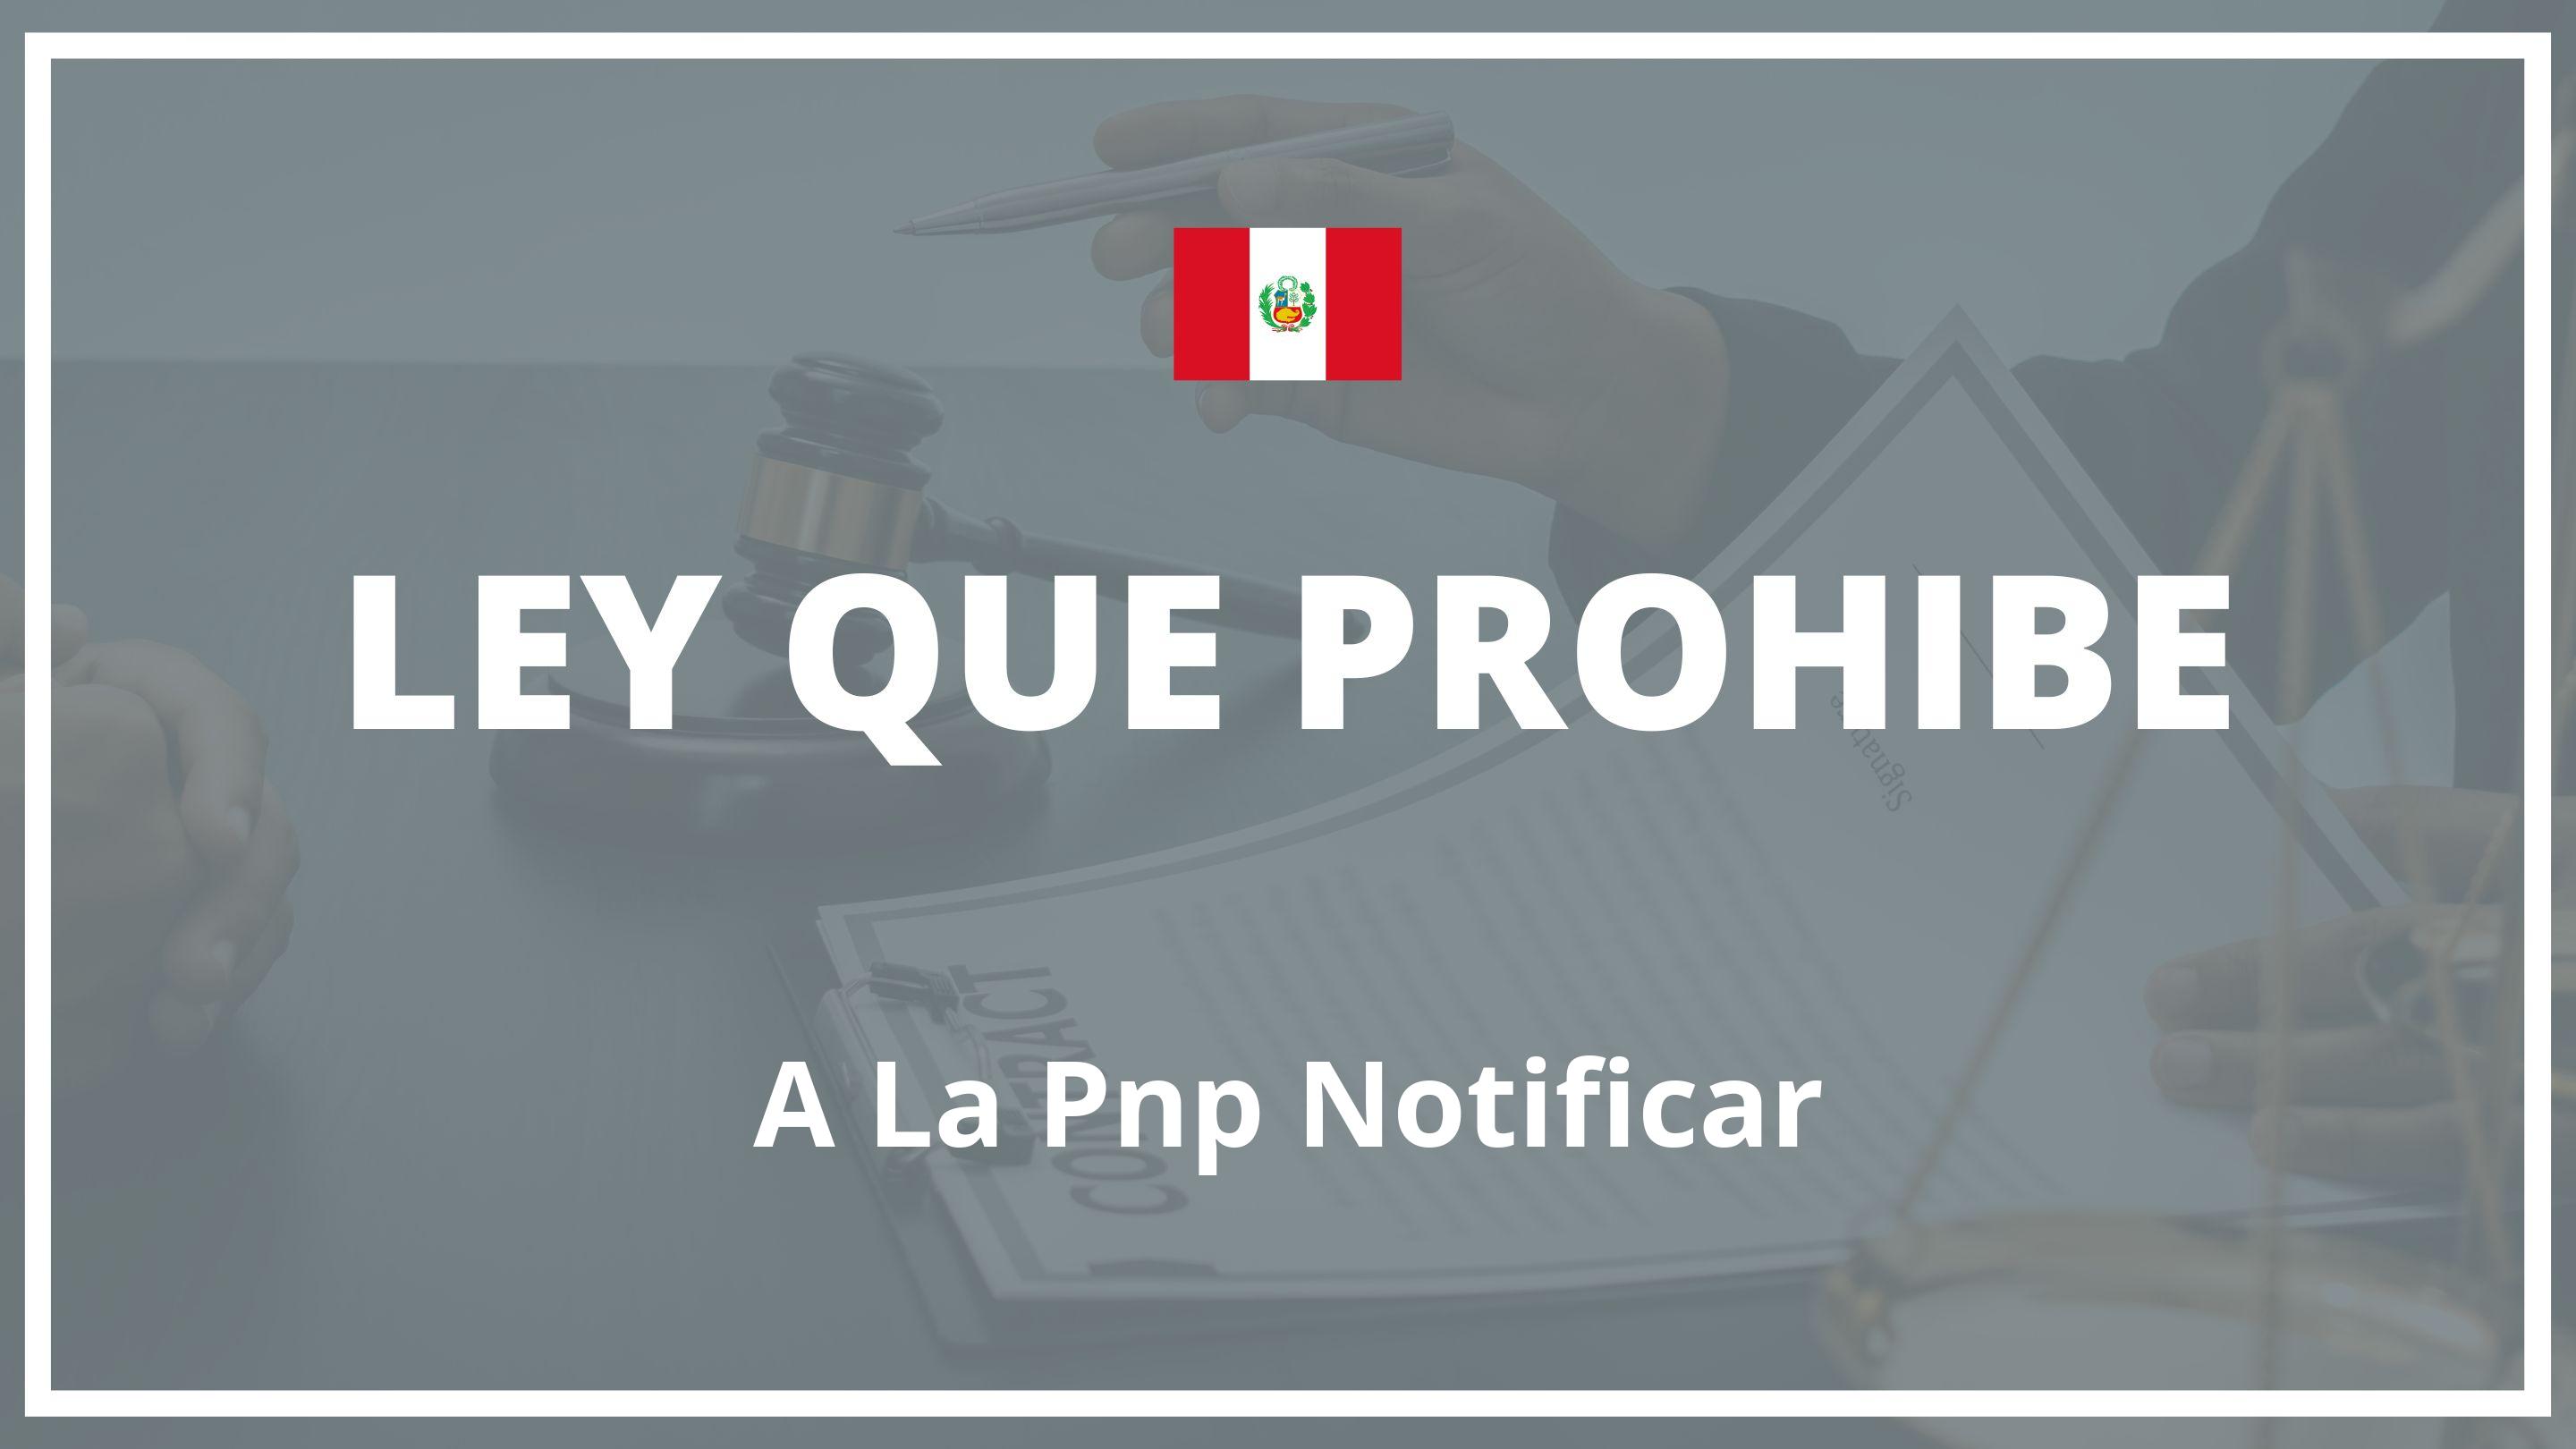 Ley que prohibe a la pnp notificar Peru